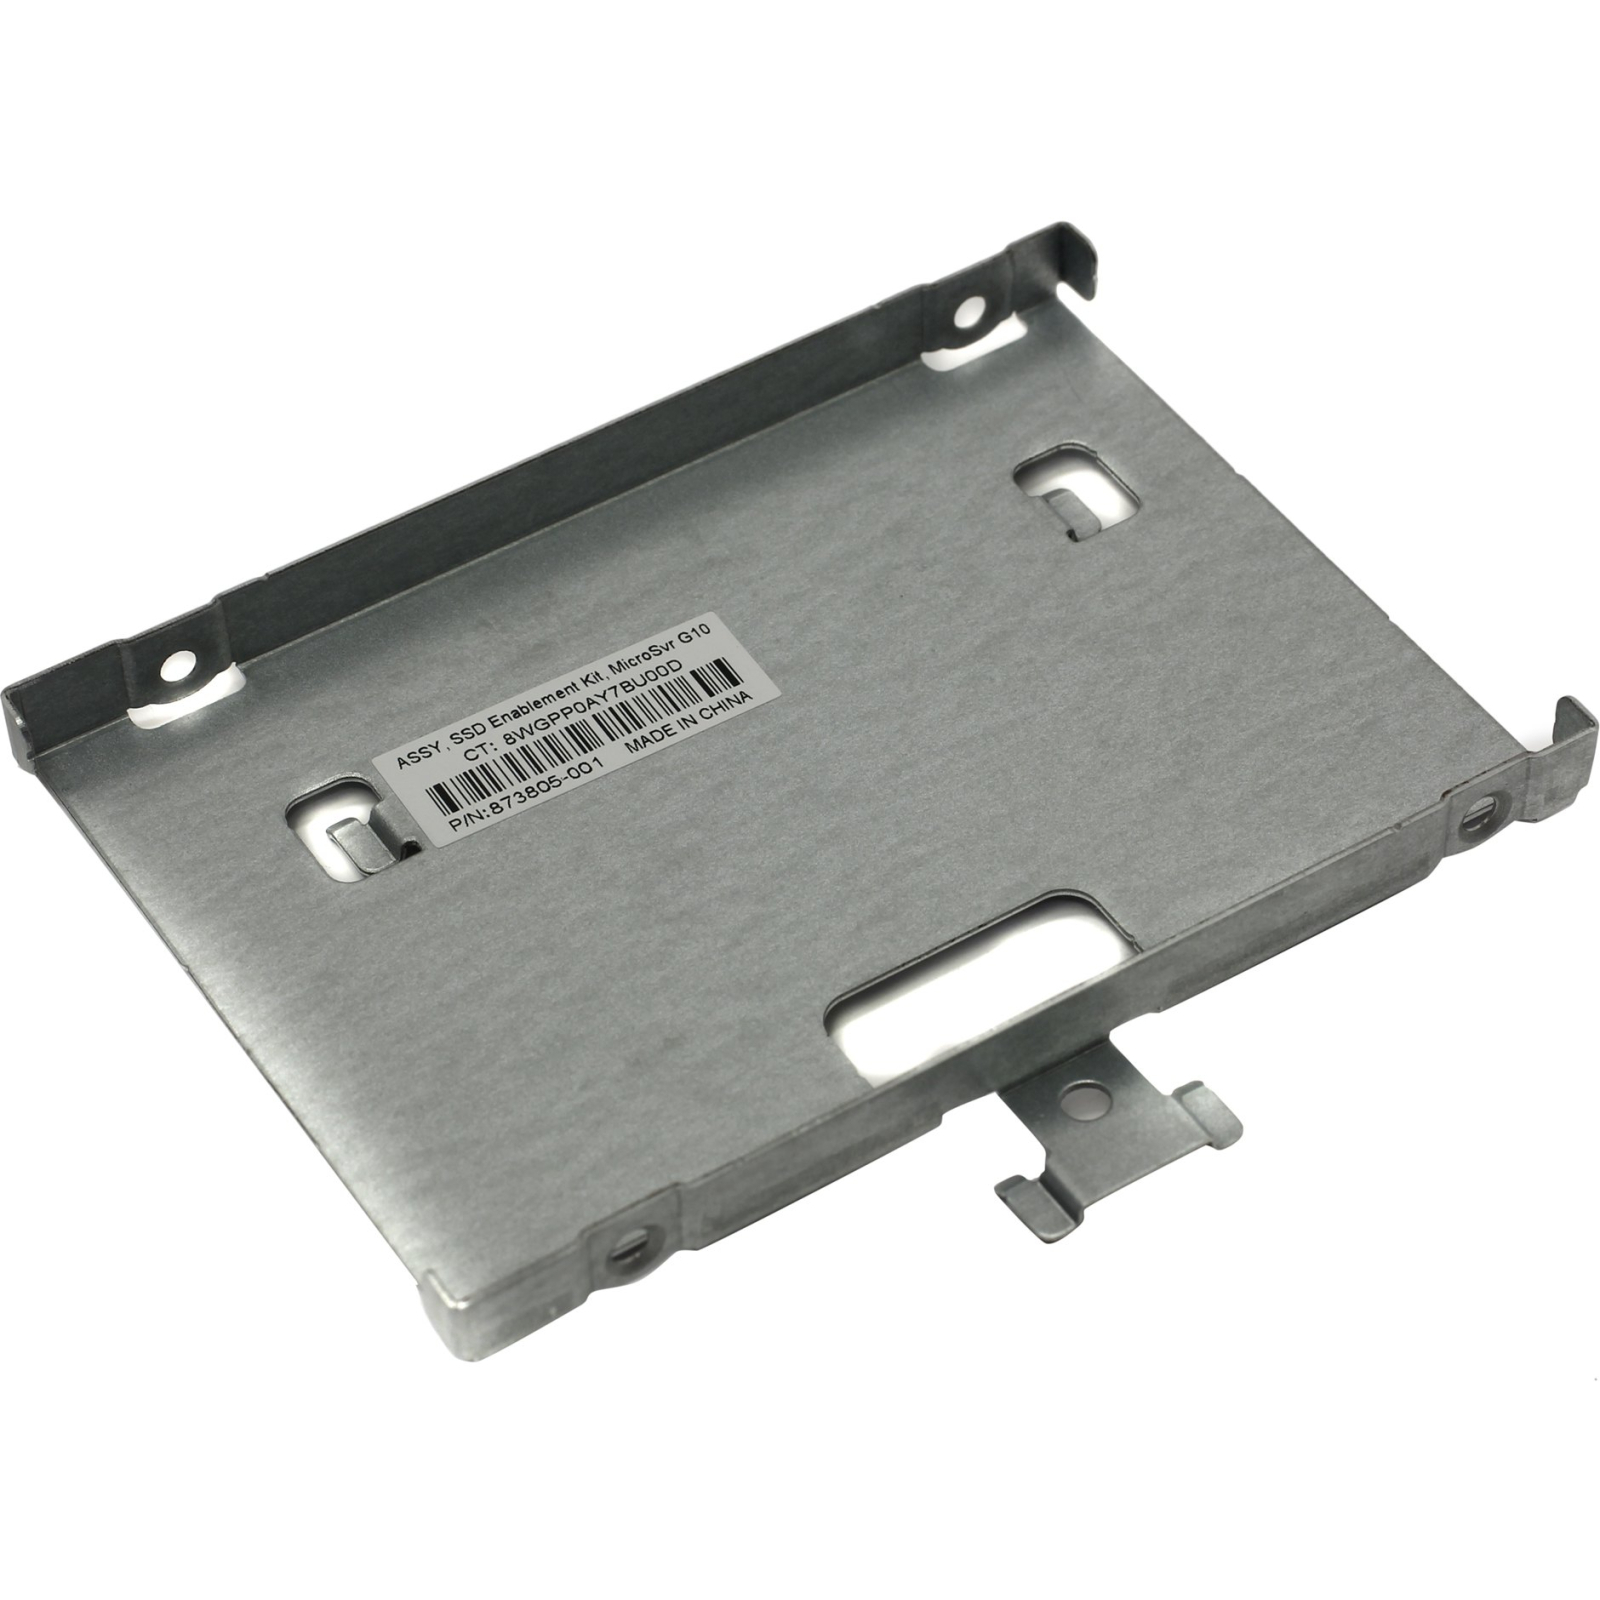 Фрейм-переходник HP MicroSvr Gen10 Slim SATA SSD Enb Kit (870212-B21)